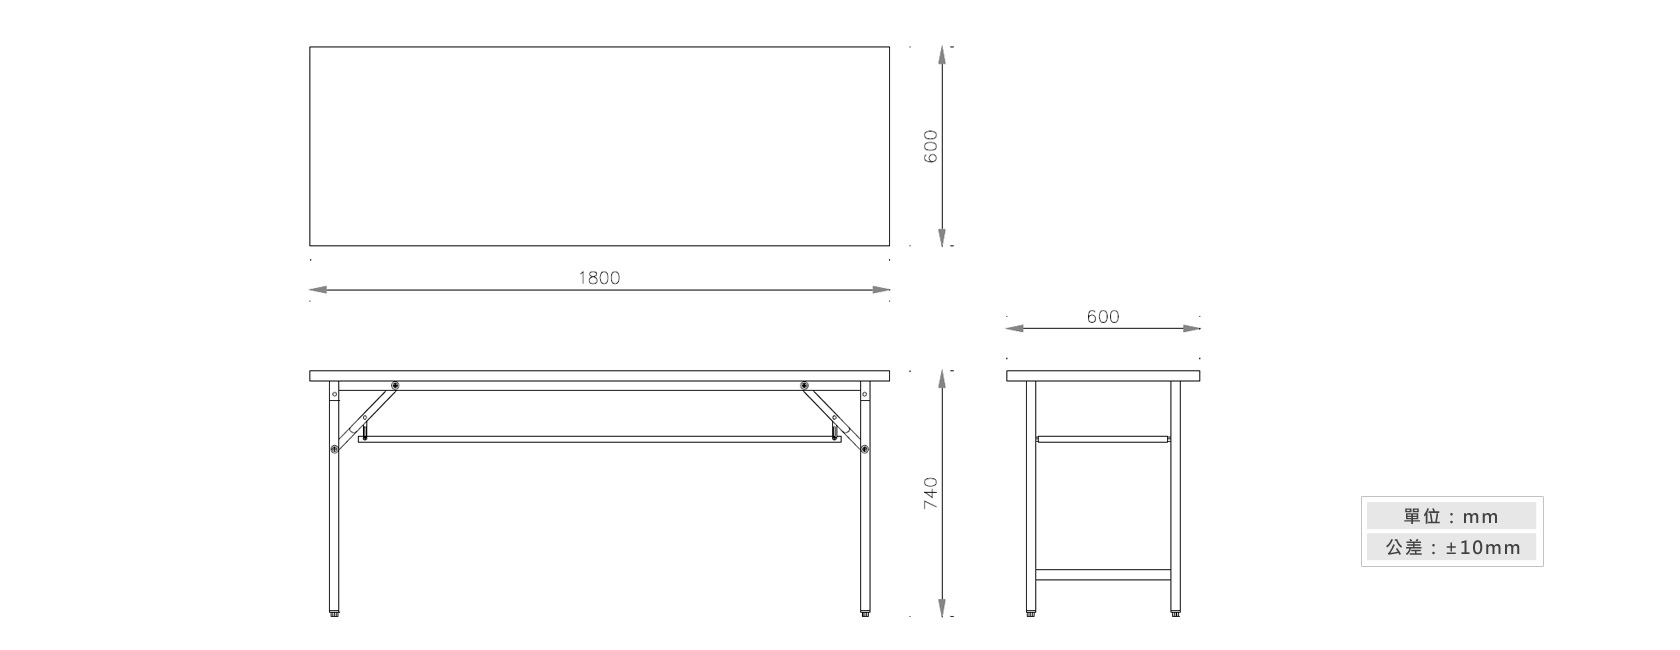 1-25 折合式會議桌(夾板桌面)材質說明